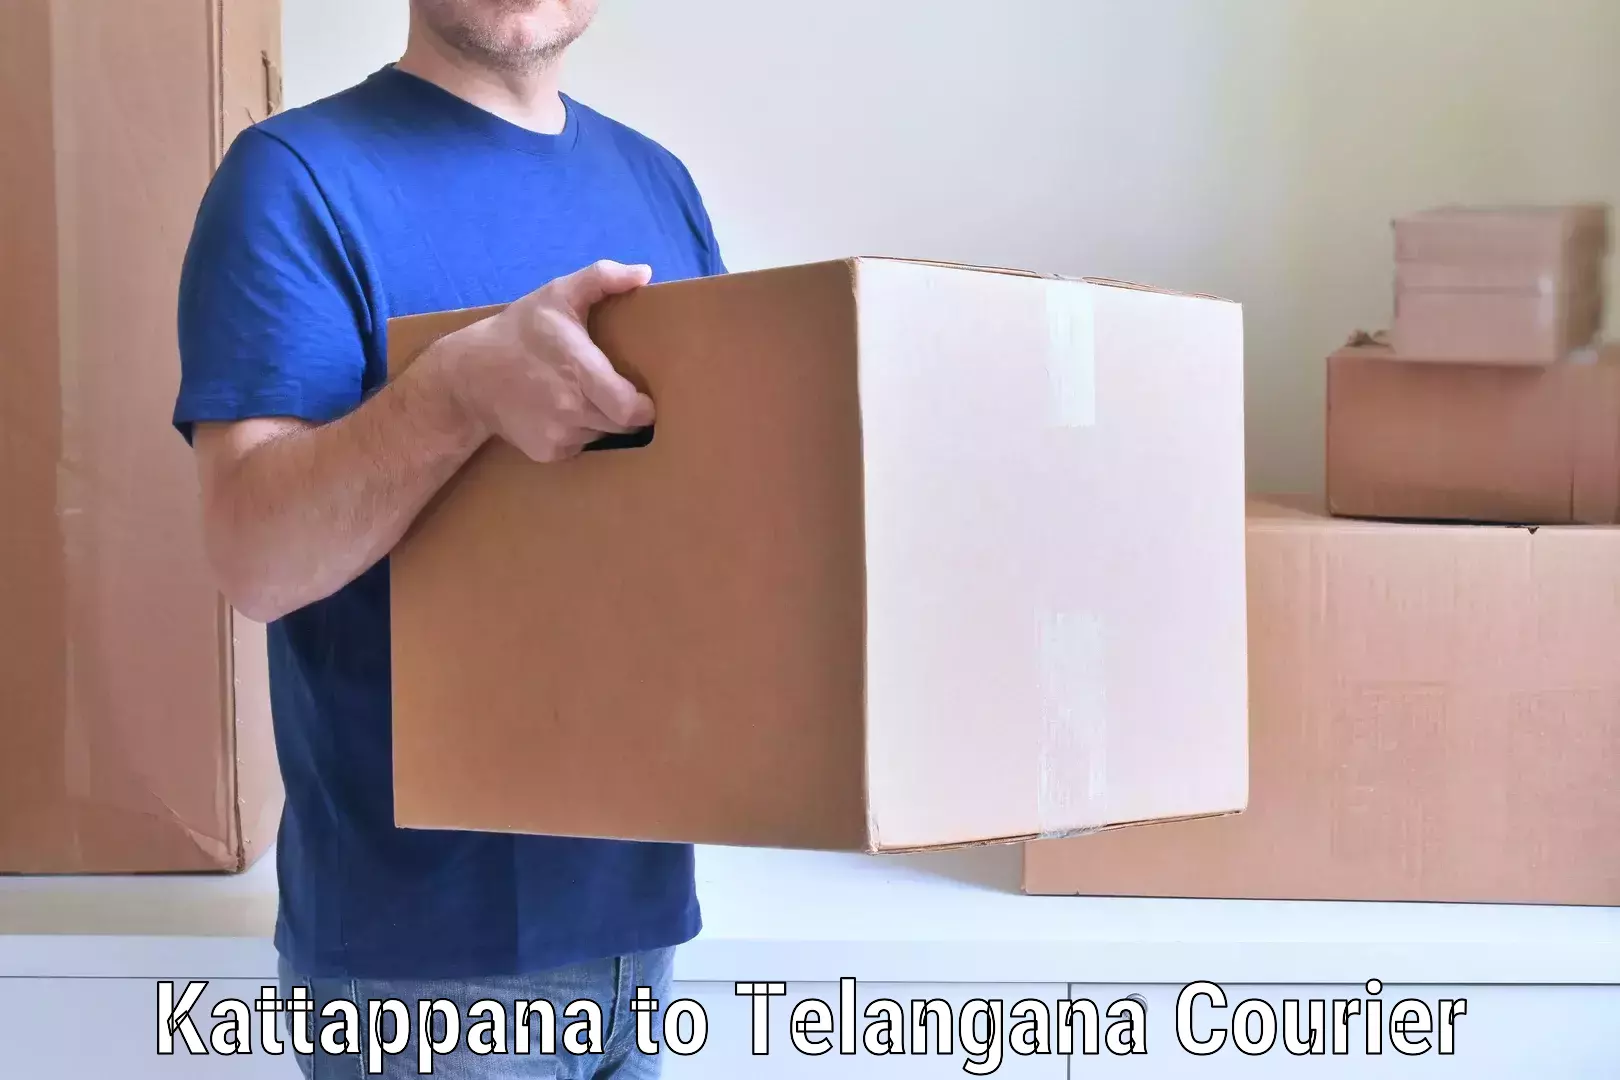 Professional moving company Kattappana to Pathipaka